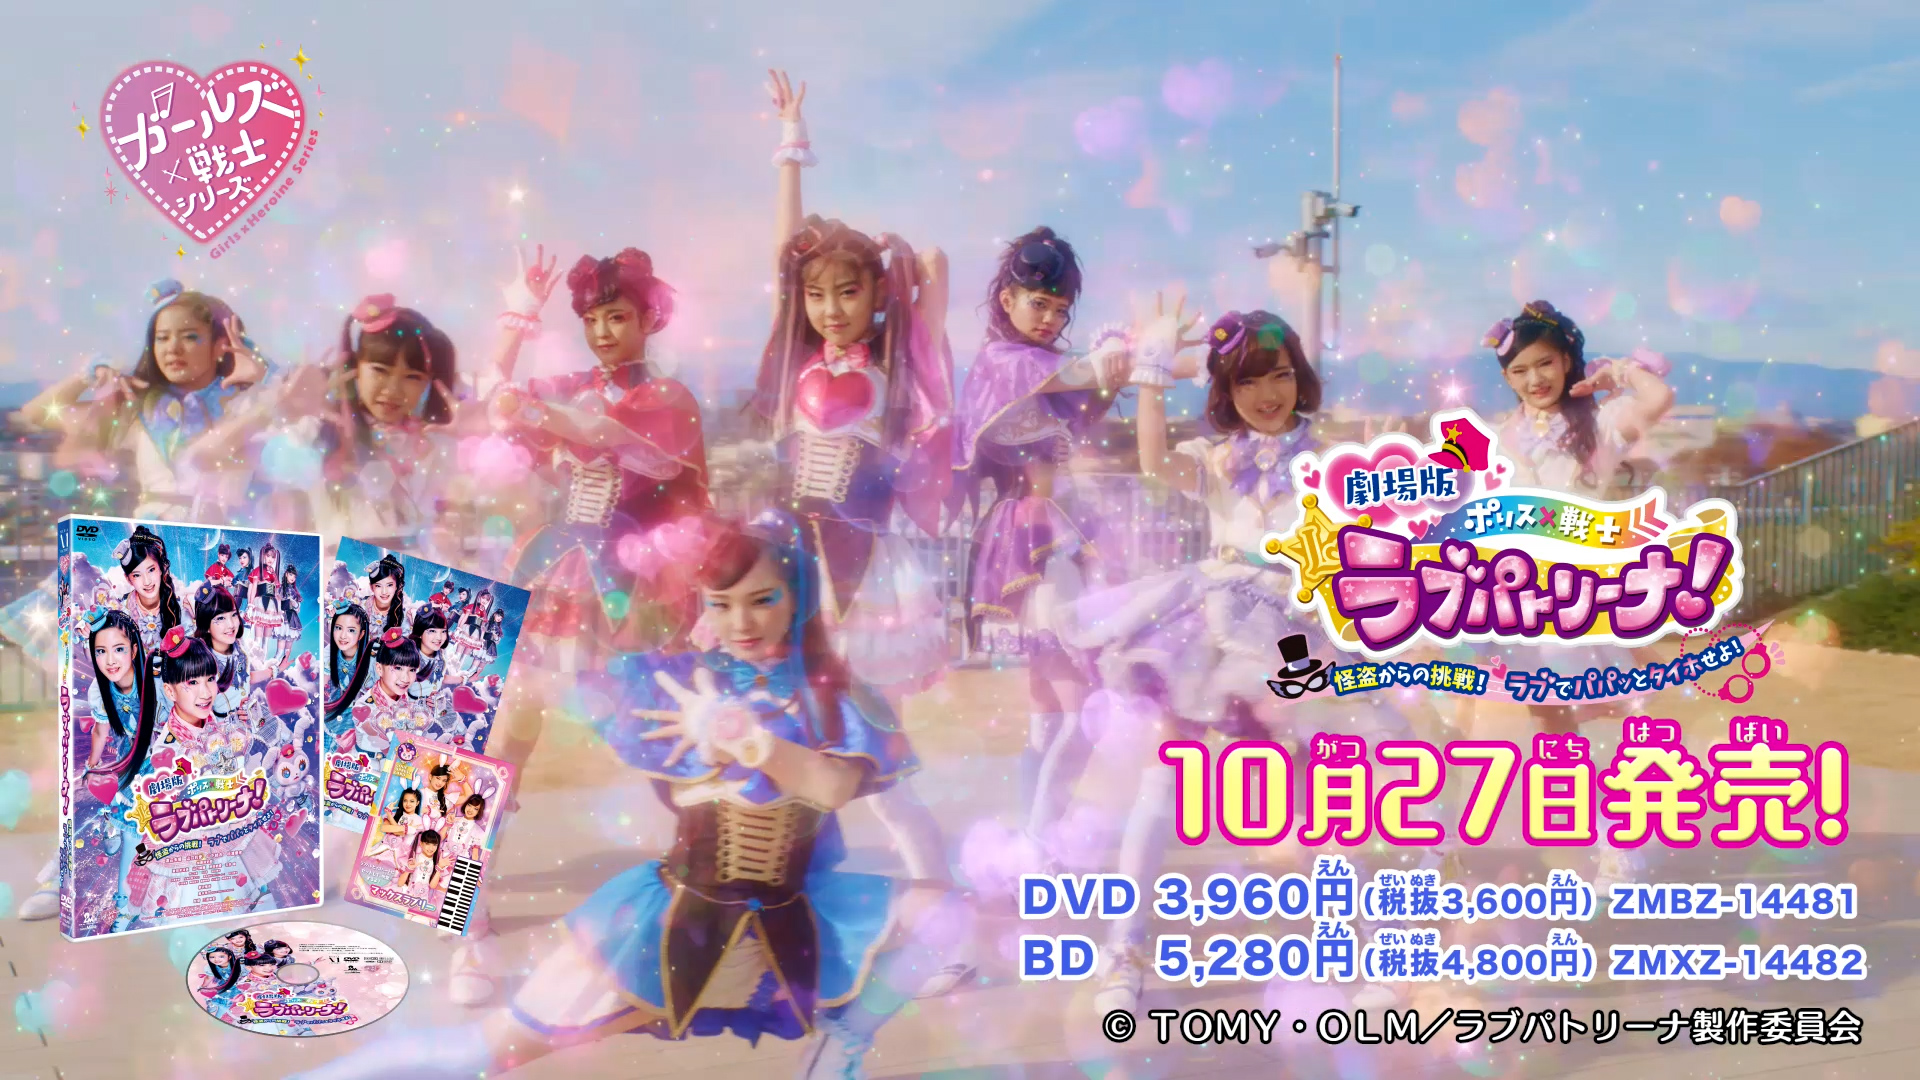 DVD&Blu-ray 10月27日発売♪